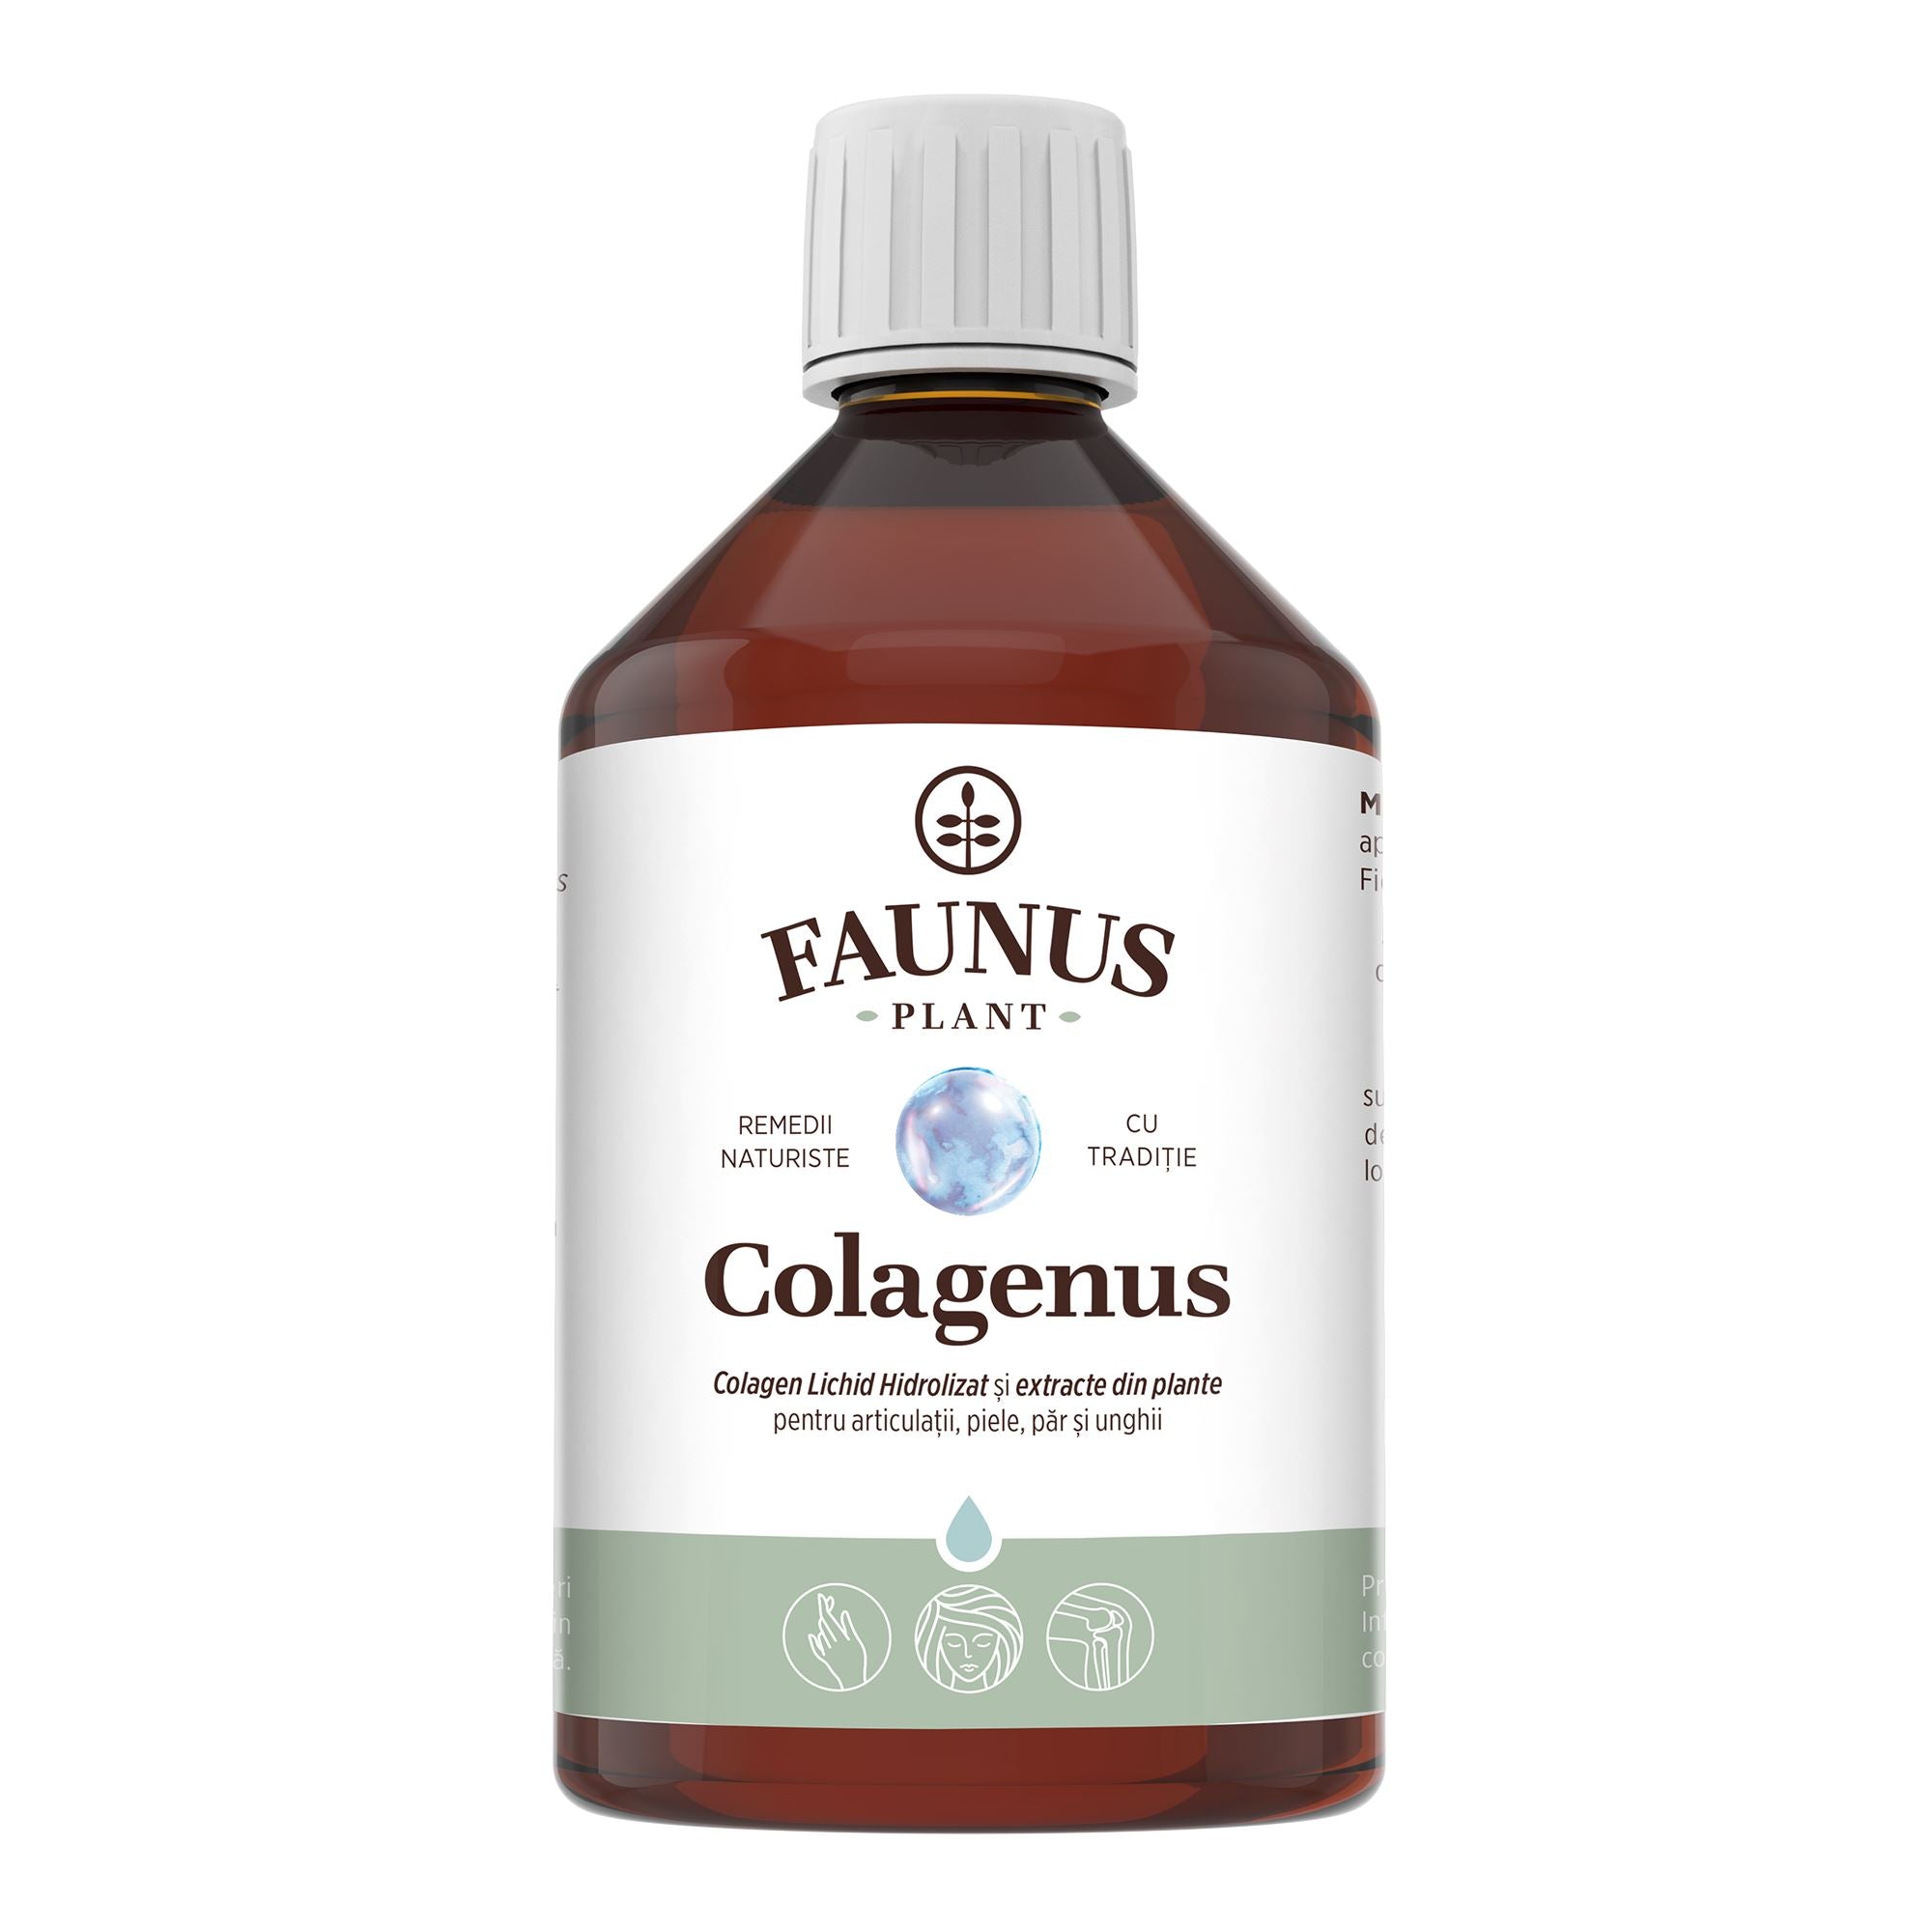 Colagenus - Colagen lichid hidrolizat. Flacon 500ml. Susține sănătatea articulațiilor, pielii, părului și unghiilor